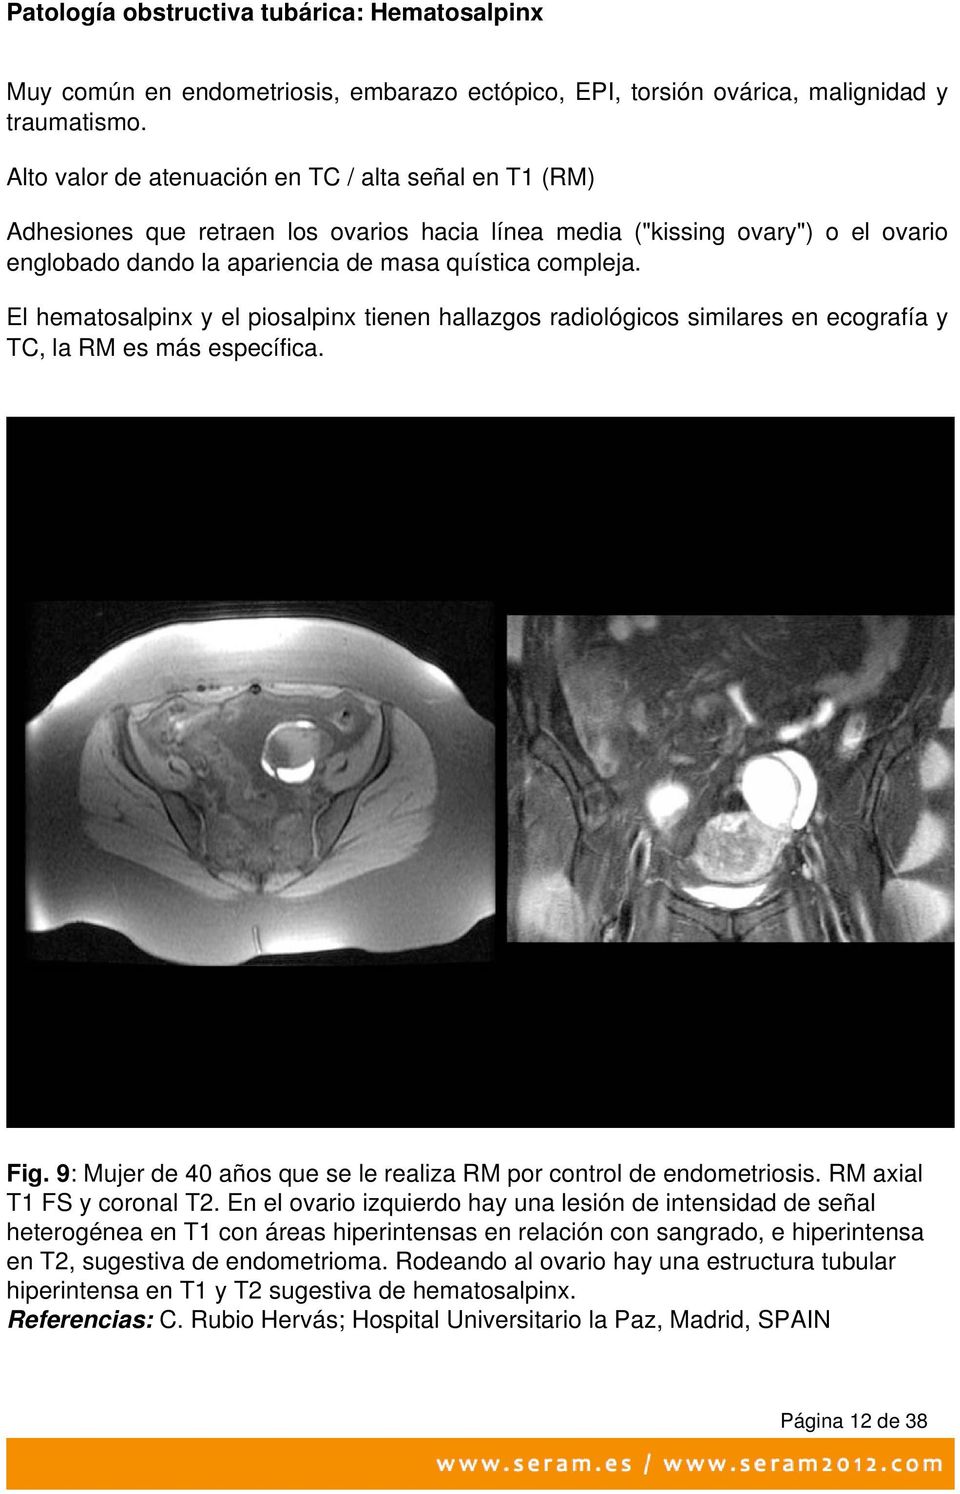 El hematosalpinx y el piosalpinx tienen hallazgos radiológicos similares en ecografía y TC, la RM es más específica. Fig. 9: Mujer de 40 años que se le realiza RM por control de endometriosis.